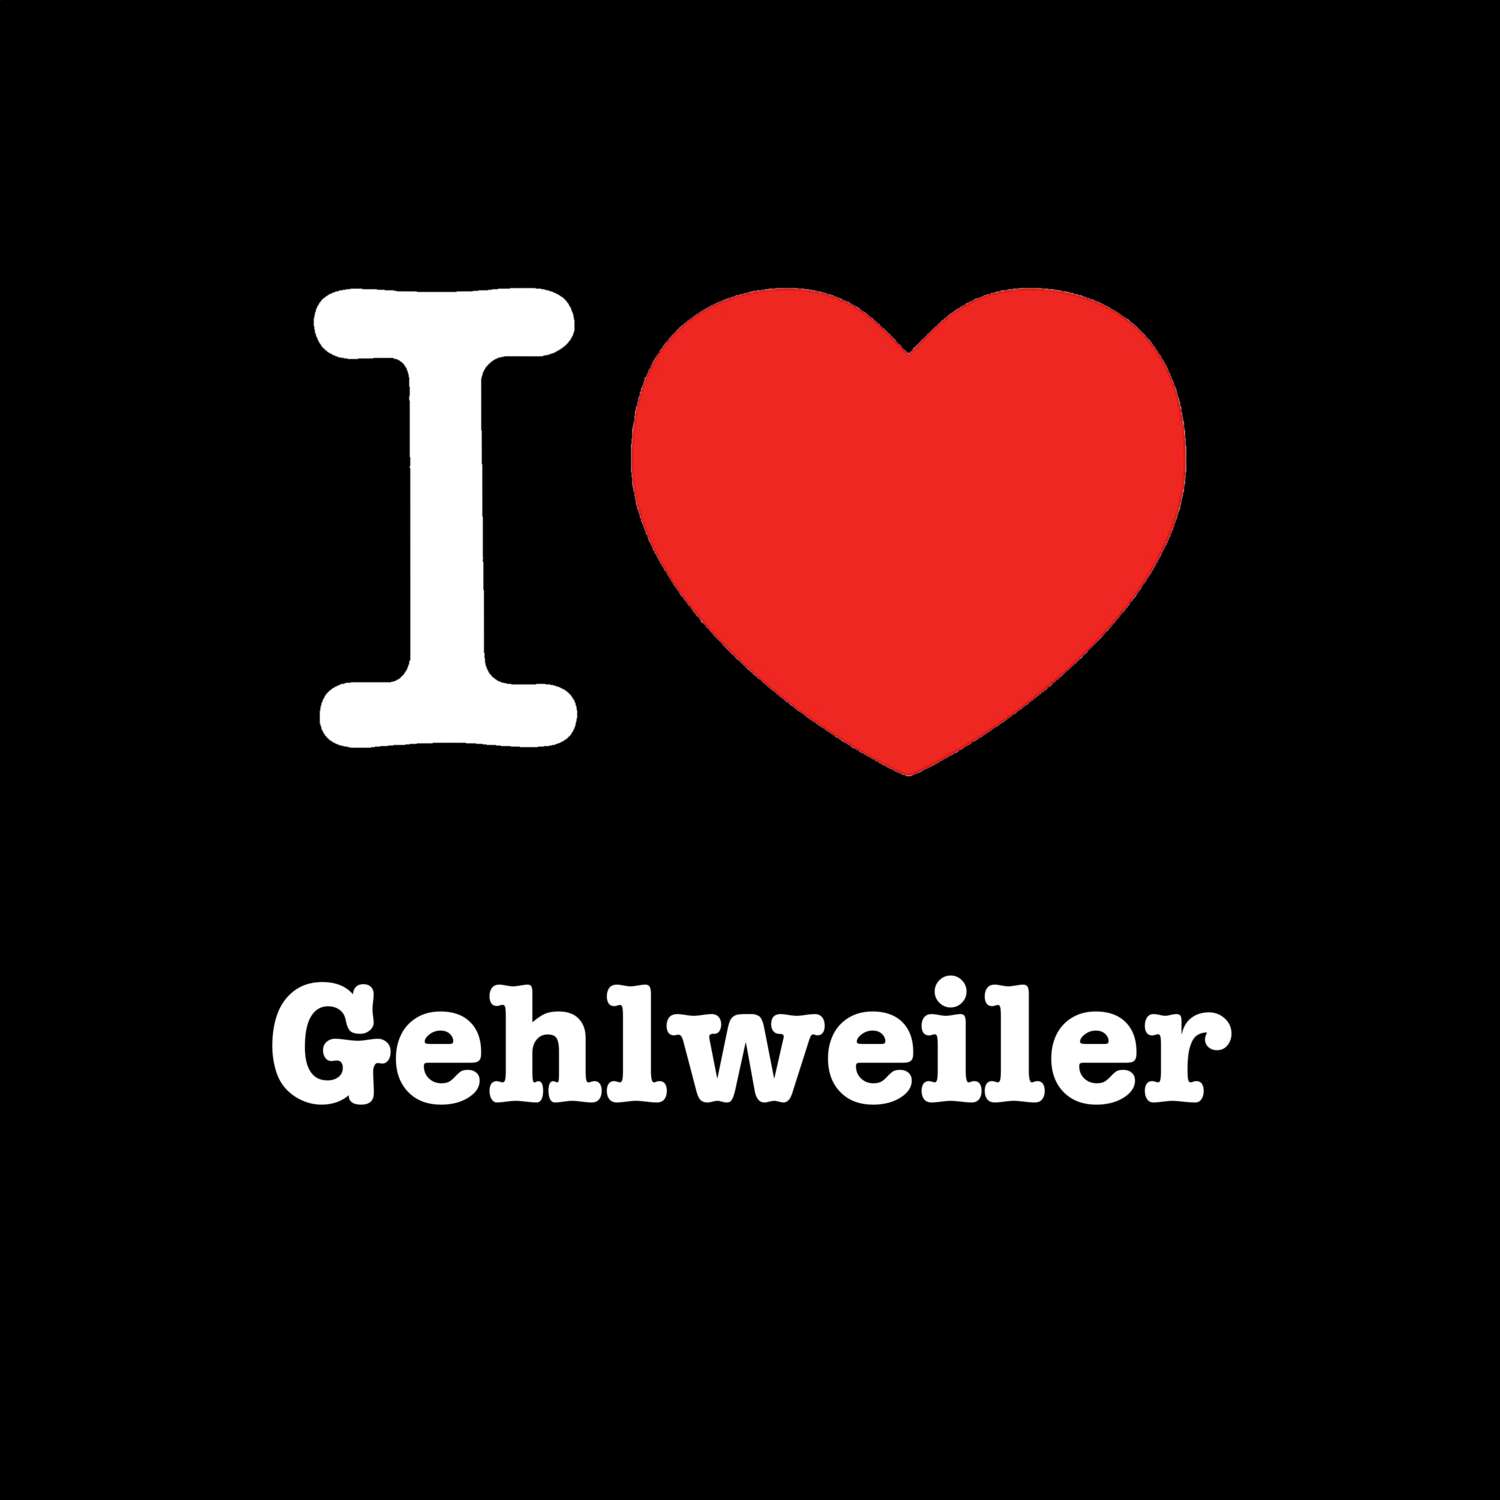 Gehlweiler T-Shirt »I love«